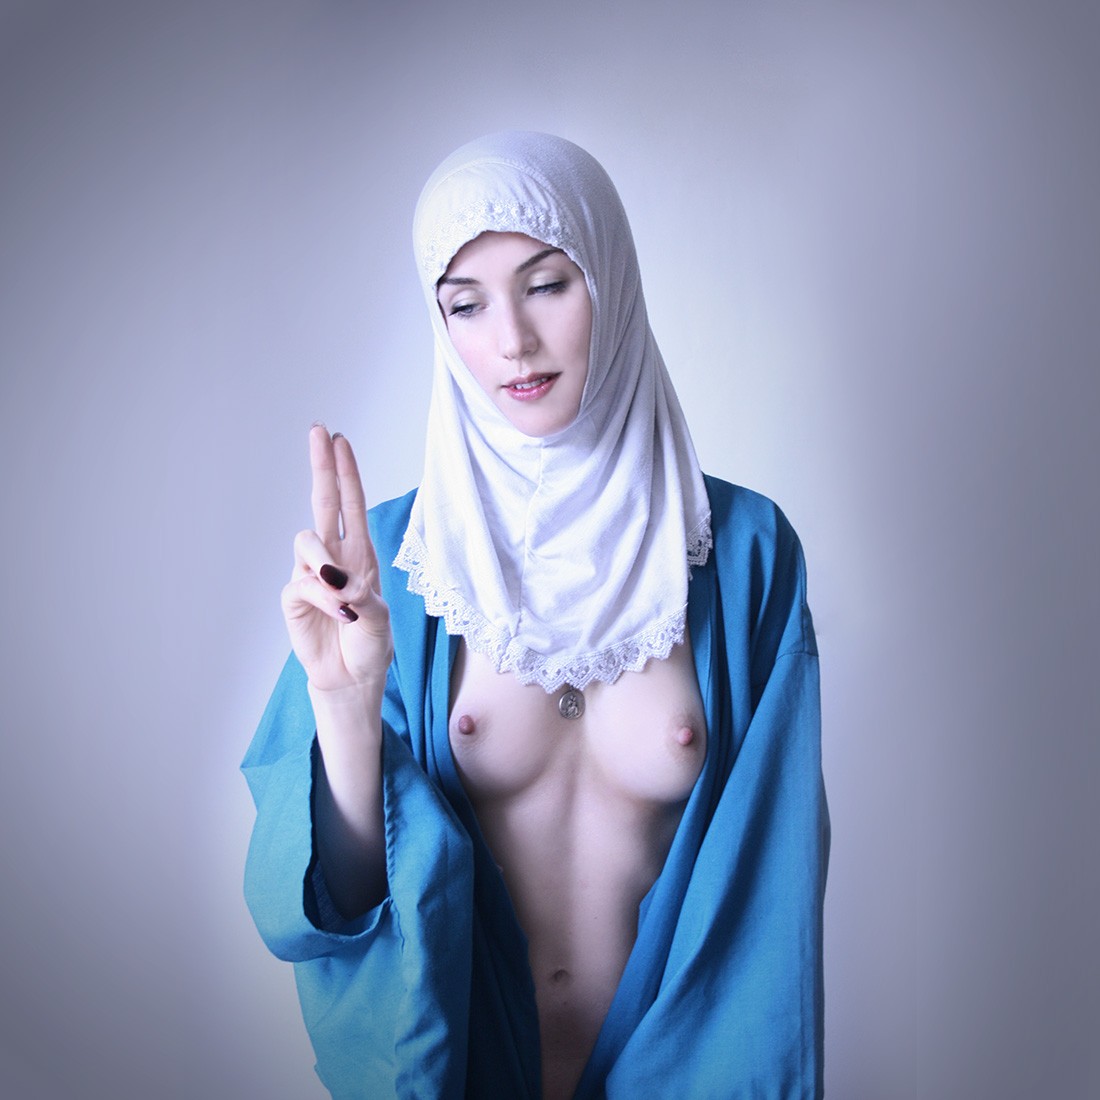 Arab girl orgasmically fan pic